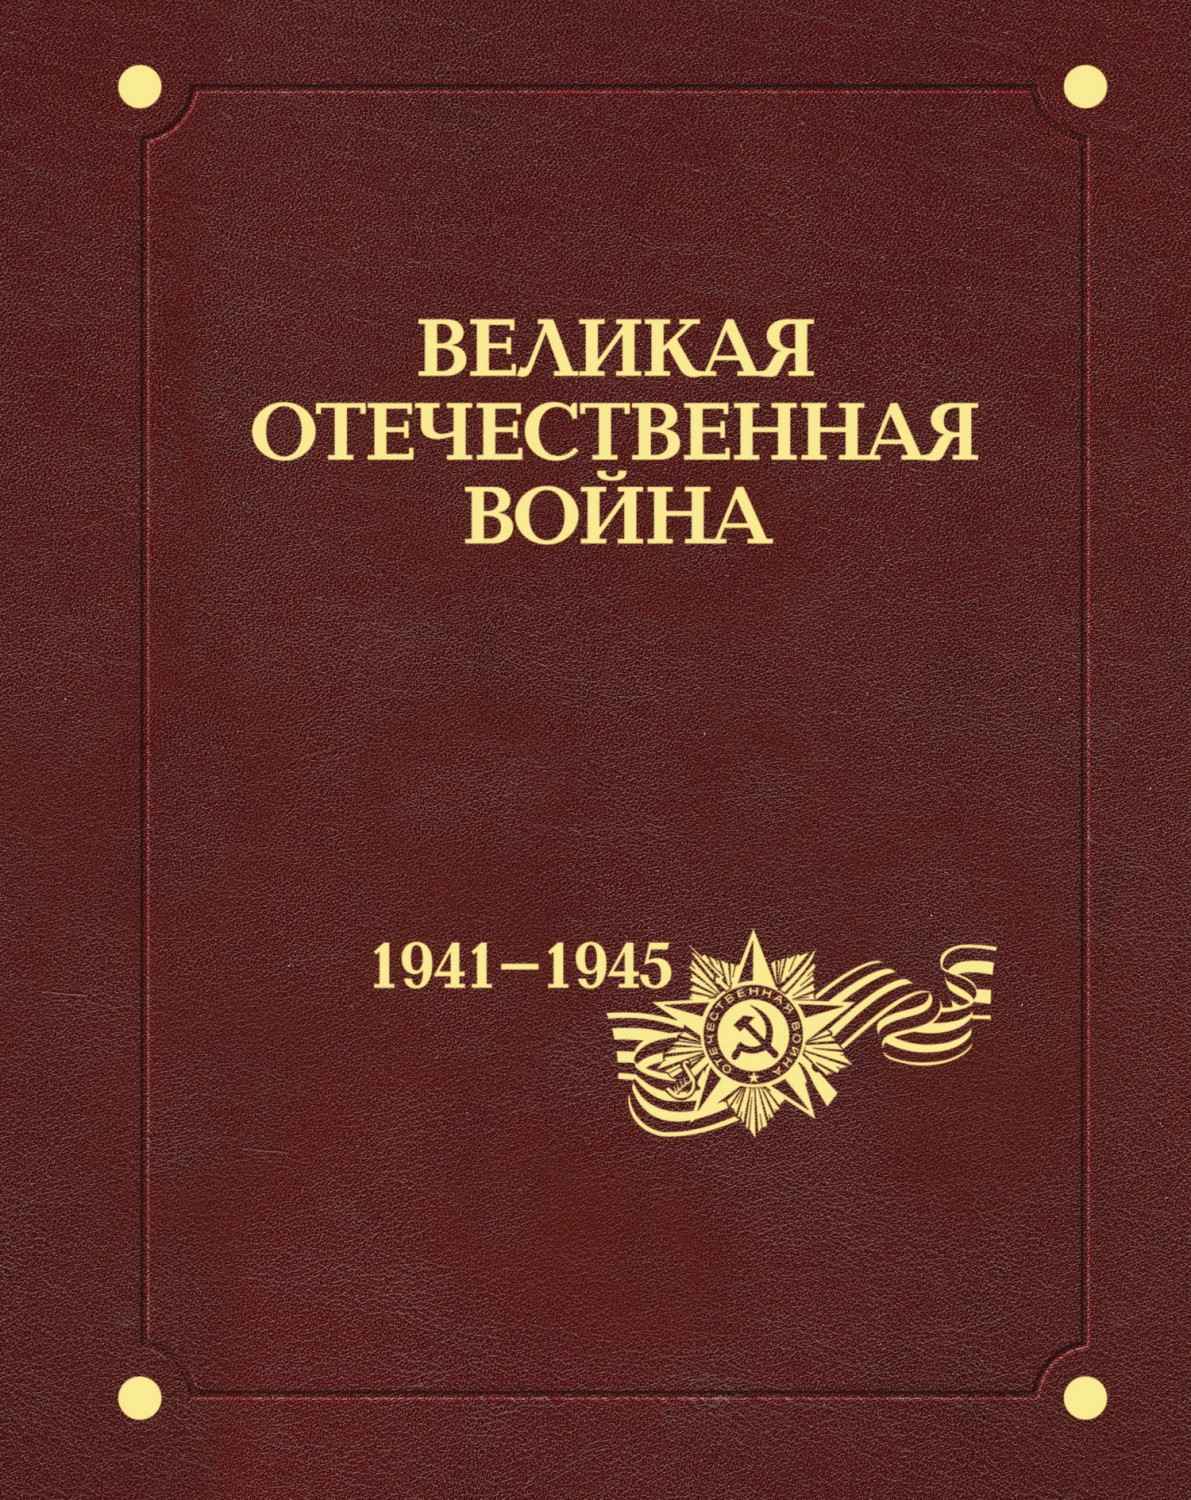 Энциклопедия «Великая Отечественная война 1941–1945 годов»